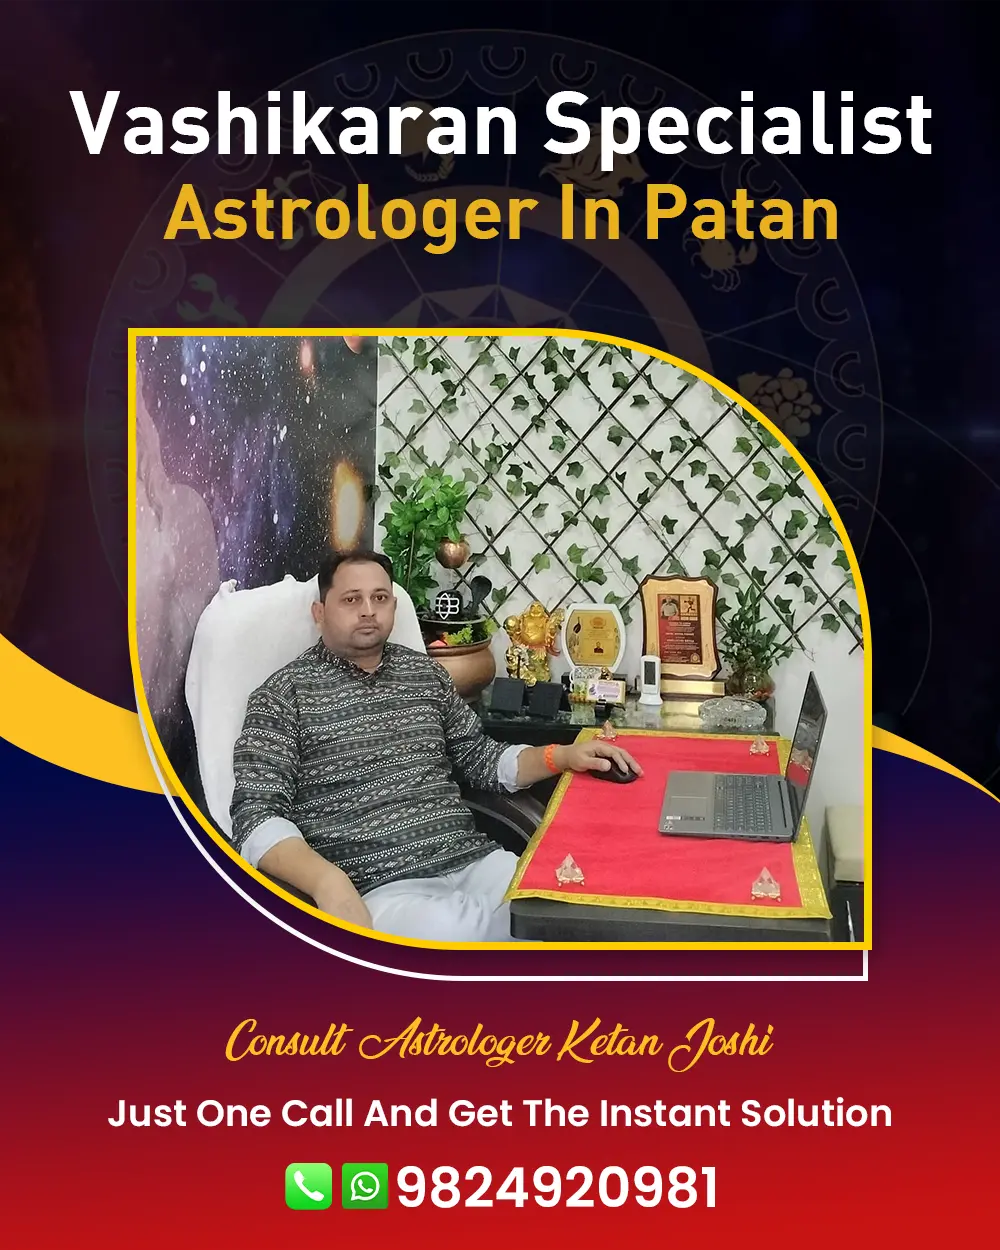 Vashikaran Specialist Astrologer In Patan